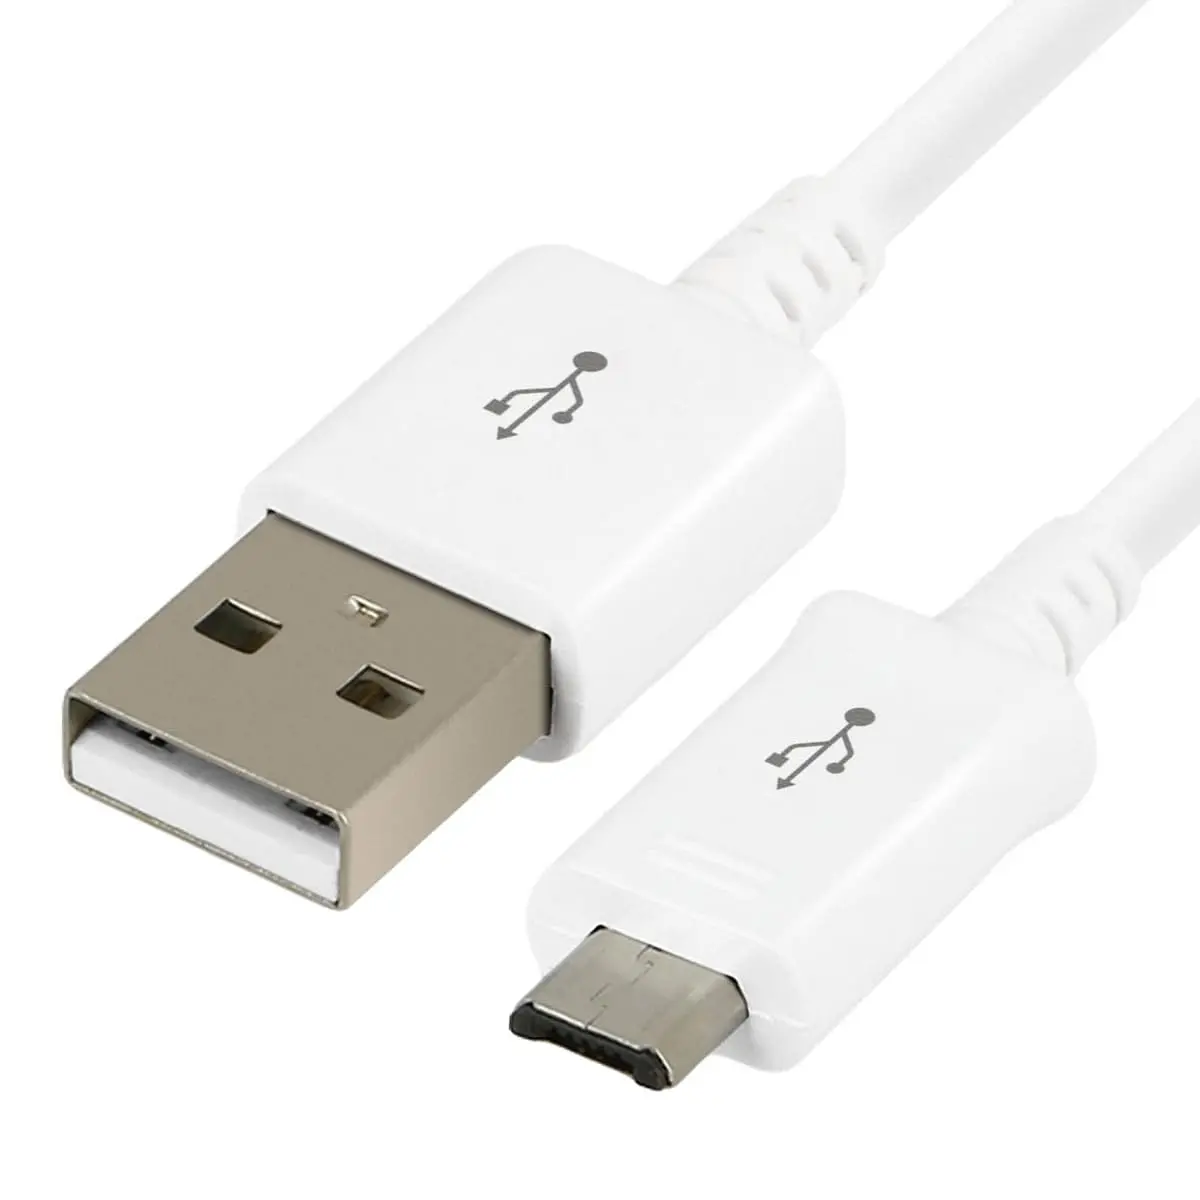 Chargeur micro USB pour tablette PC / téléphone portable, sortie